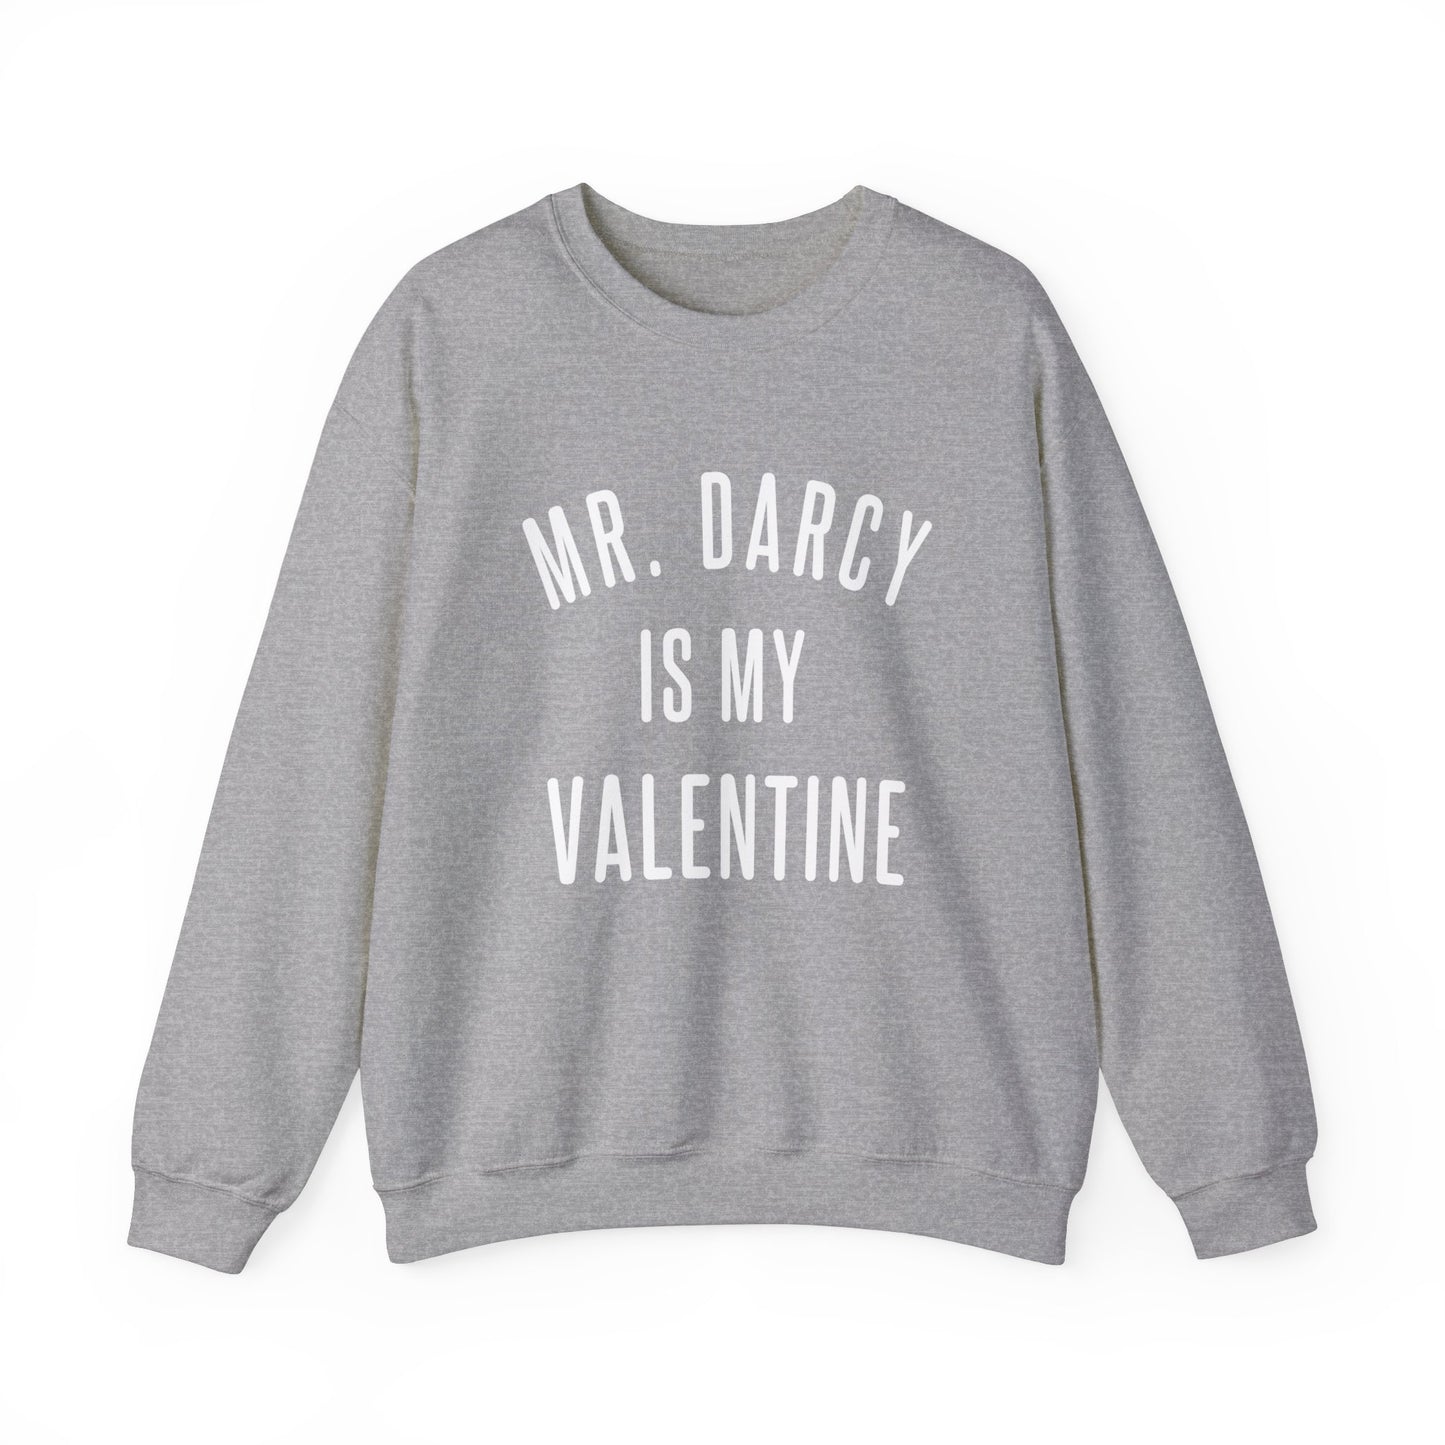 Mr. Darcy is my Valentine Crewneck Sweatshirt